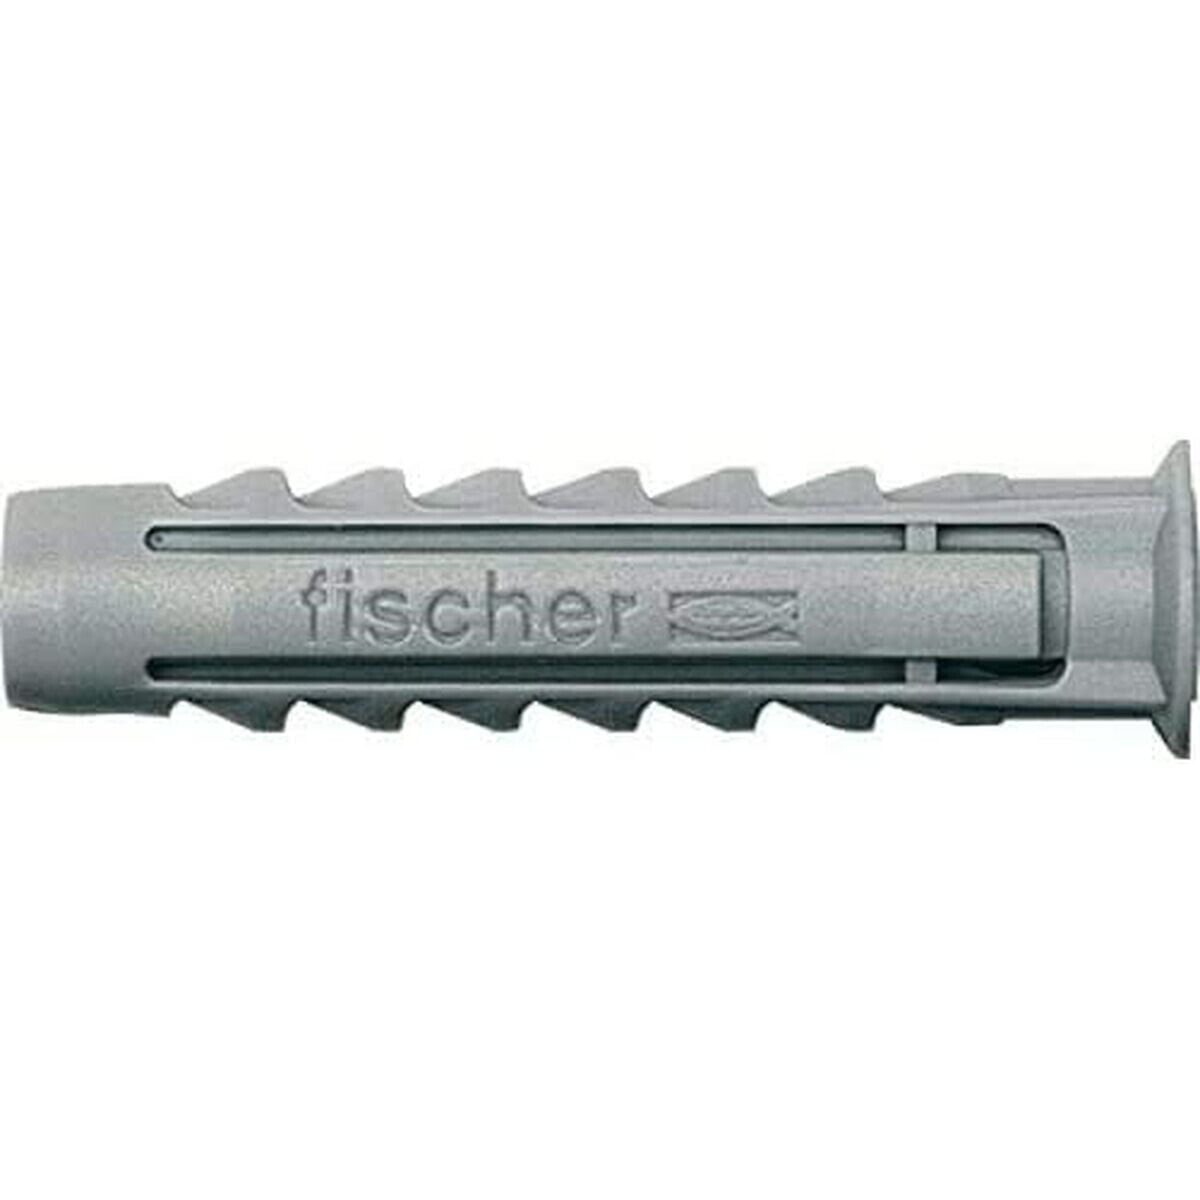 Шипы Fischer SX 553434 6 x 30 mm Нейлон (80 штук)